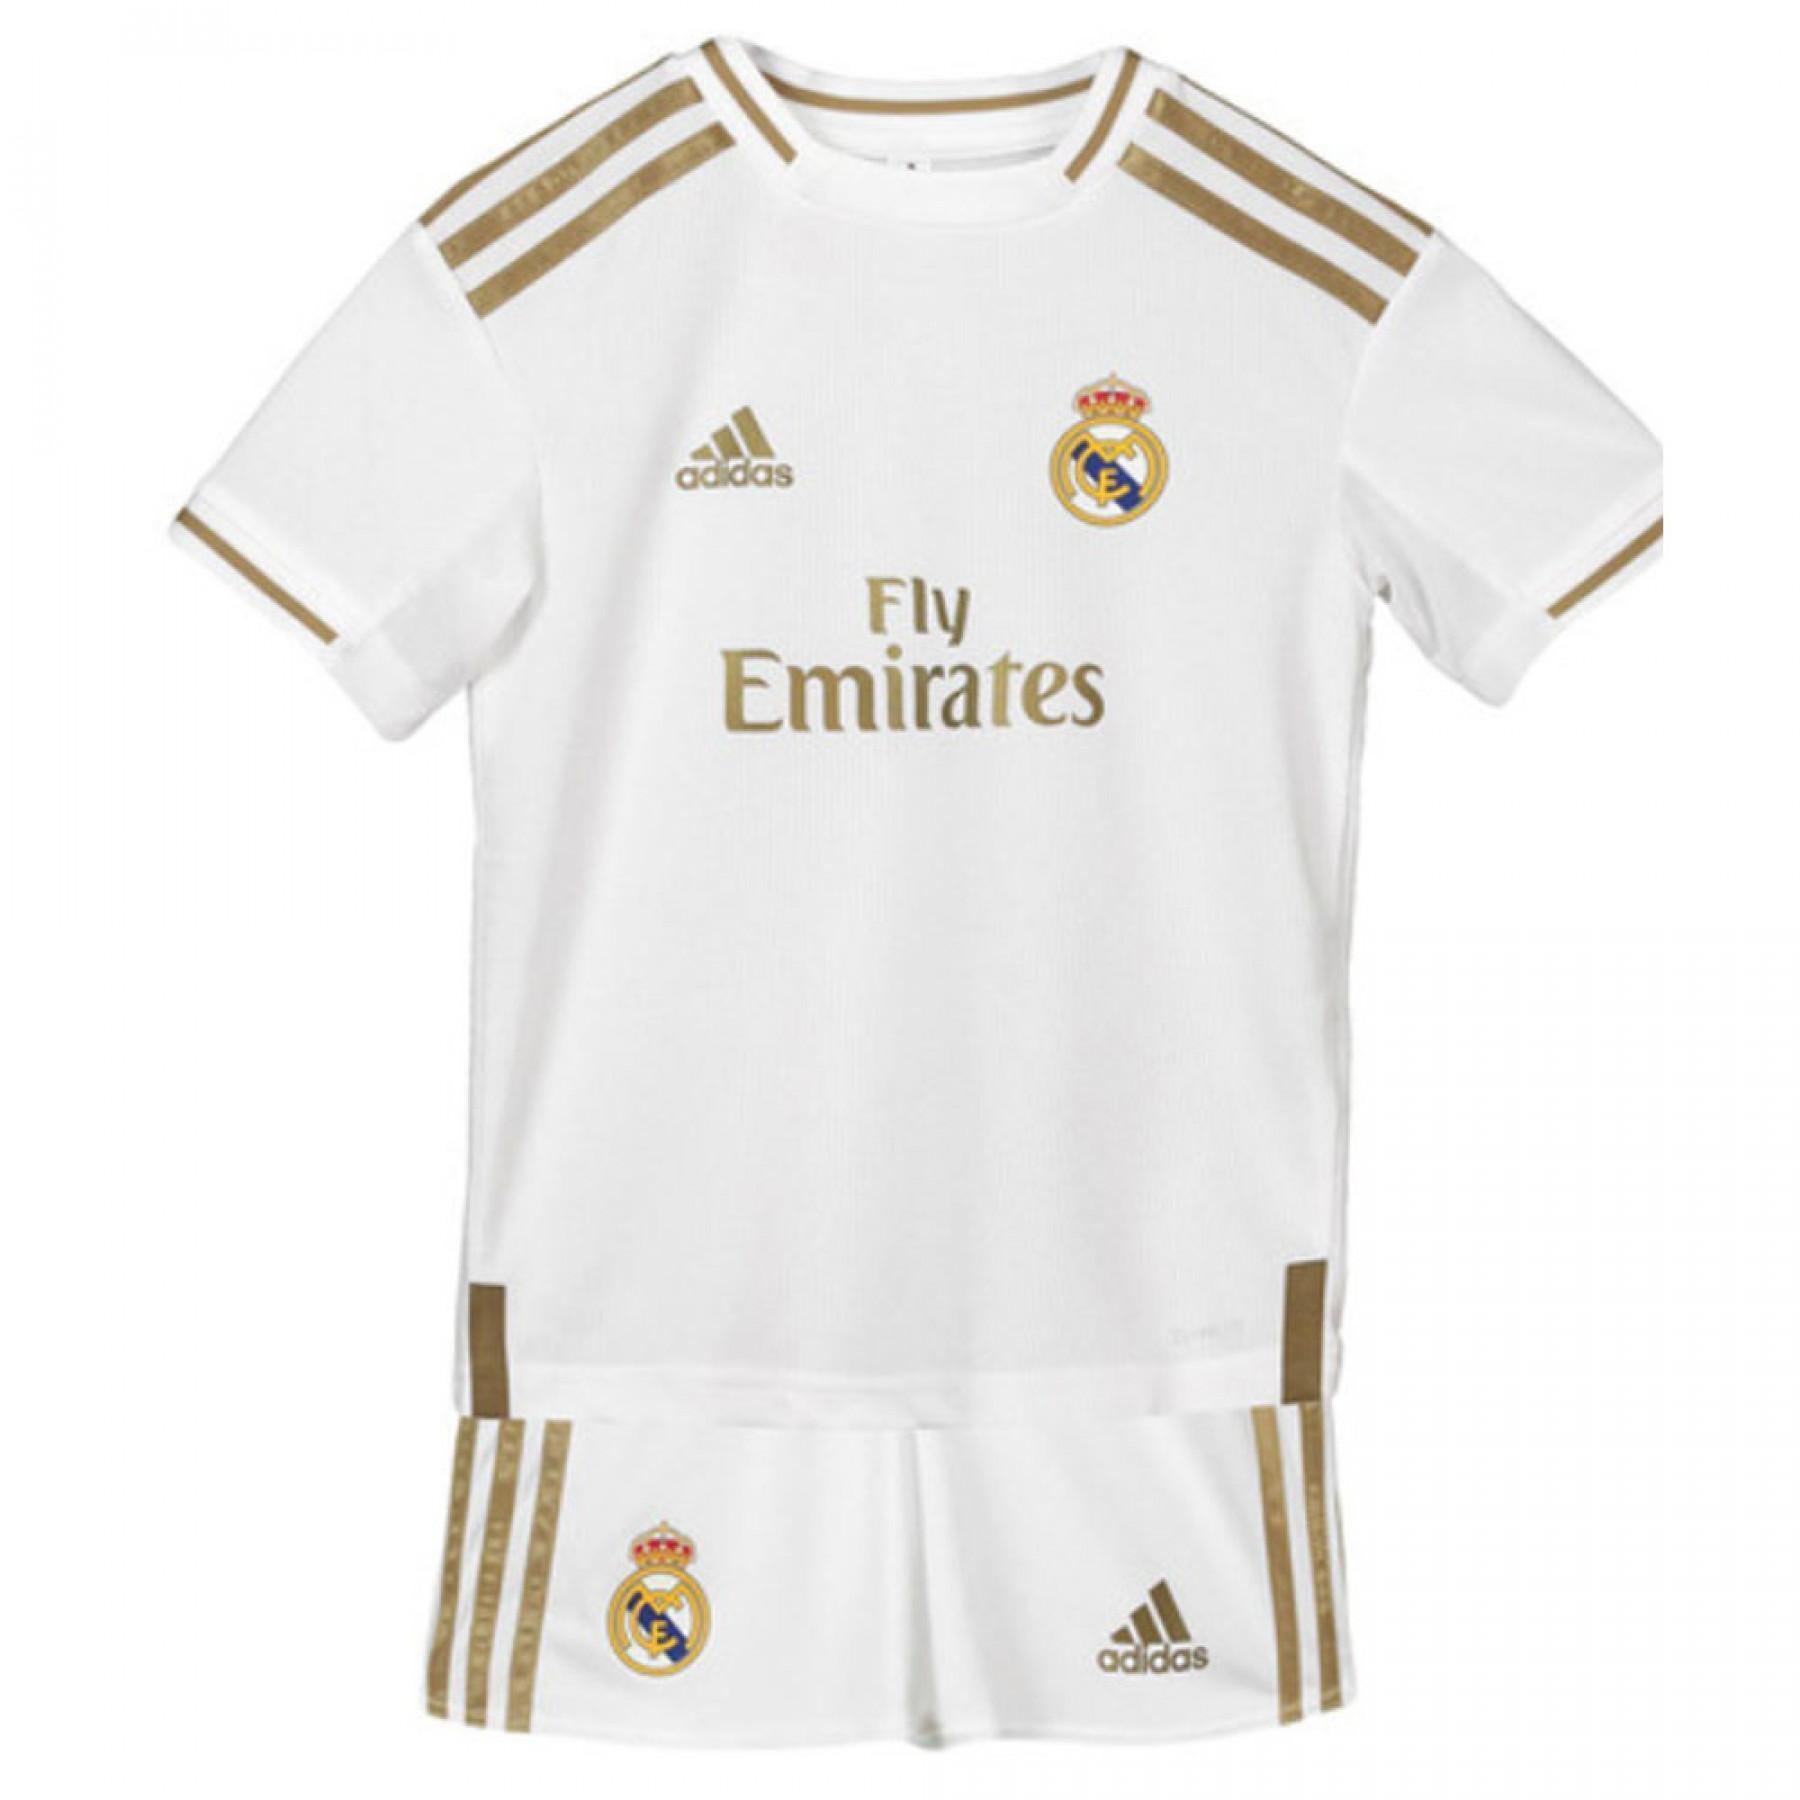 Mini kit de casa Real Madrid 2019/20